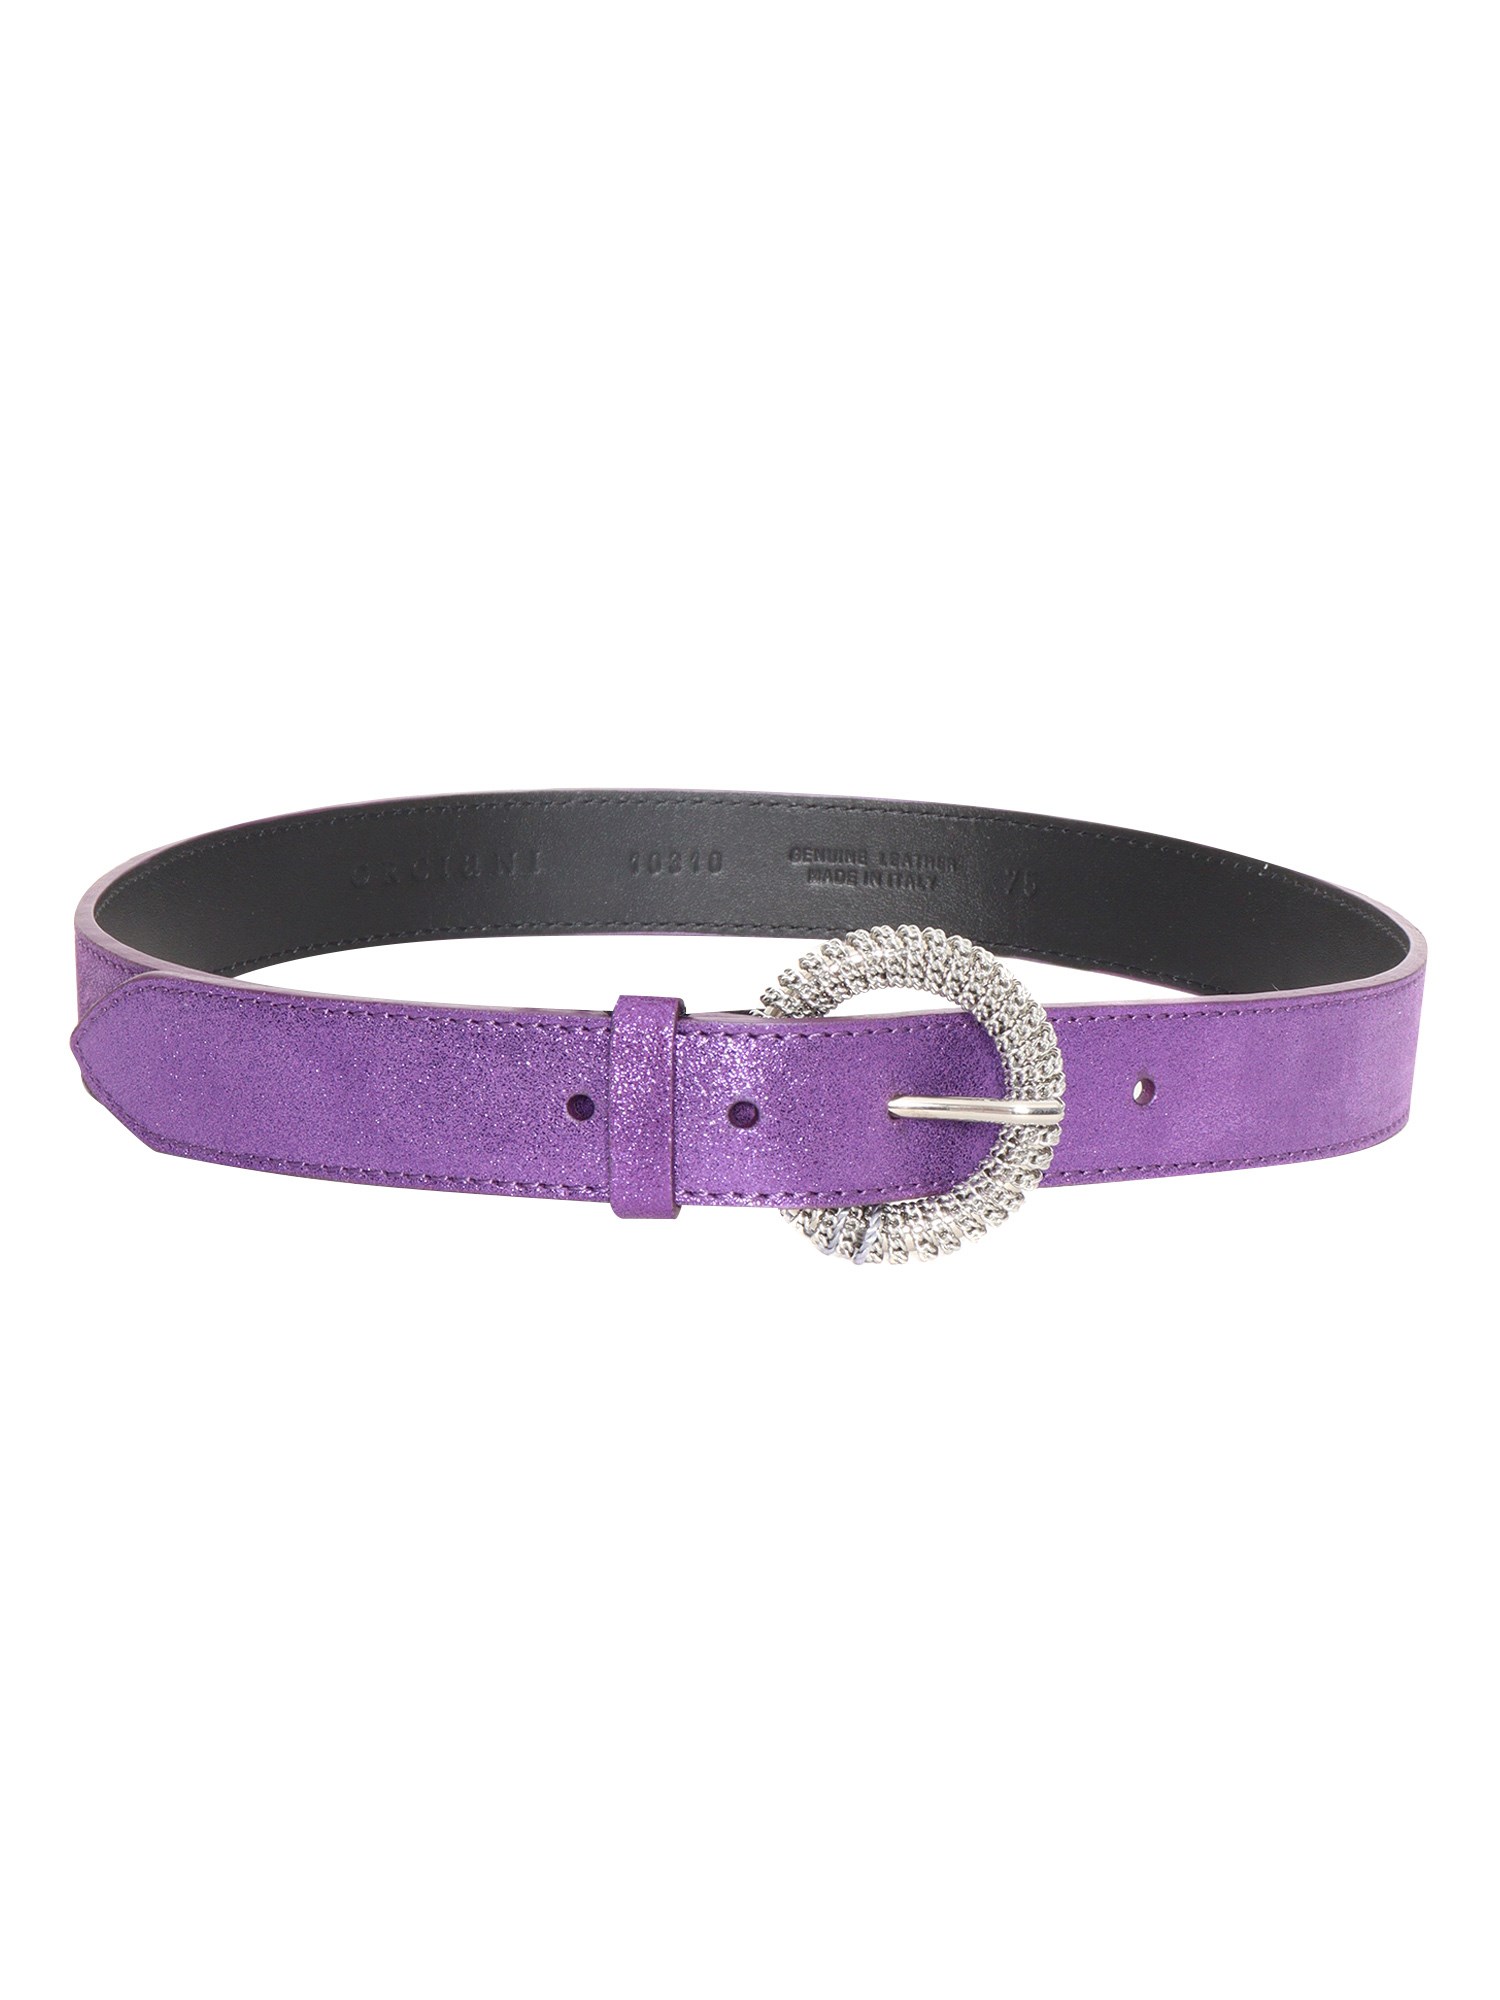 Orciani Midnight Belt In Purple